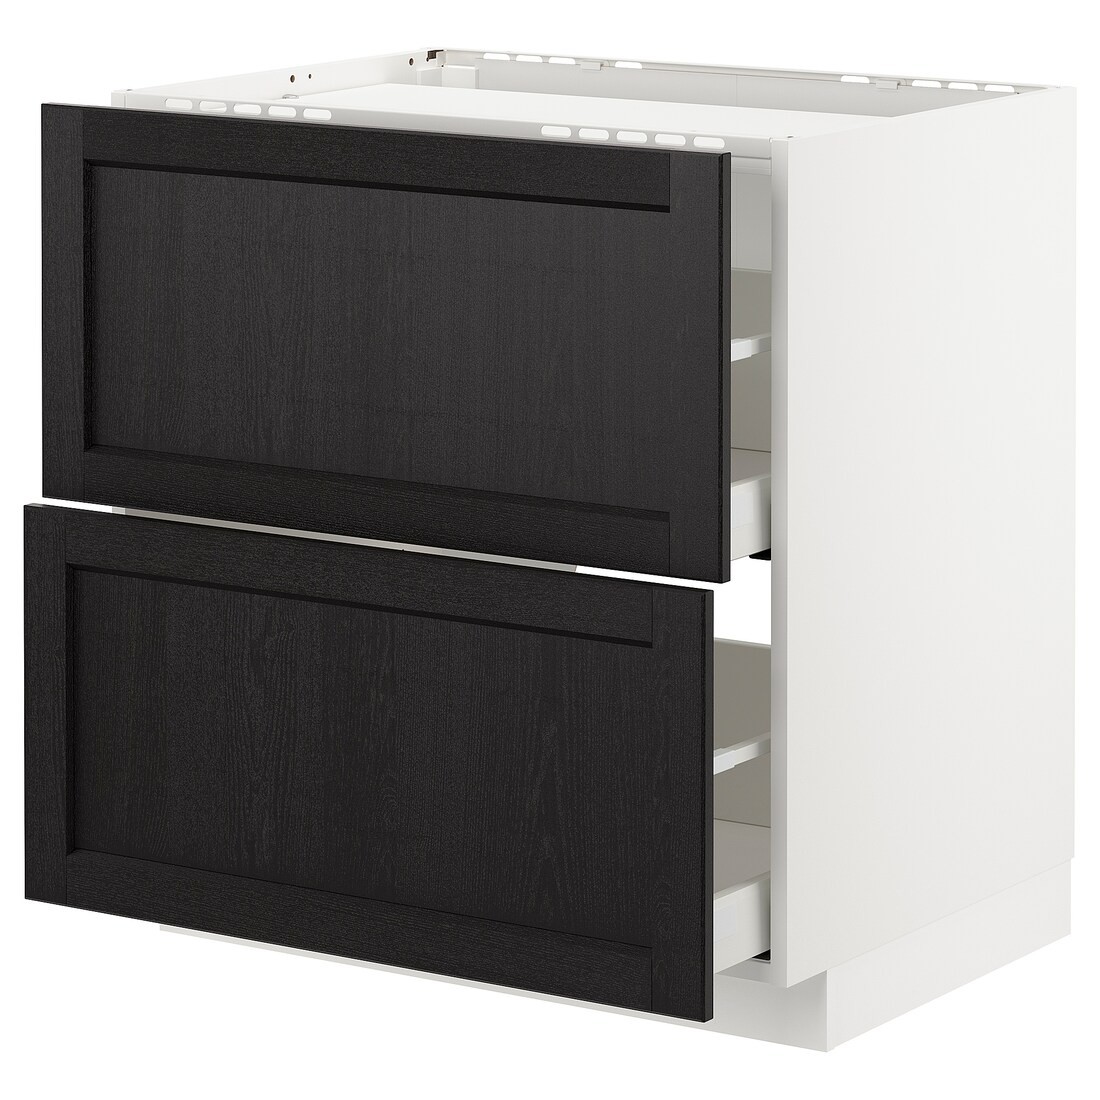 METOD МЕТОД / MAXIMERA МАКСИМЕРА Шкаф для варочной панели / 2 ящика, белый / Lerhyttan черная морилка, 80x60 см